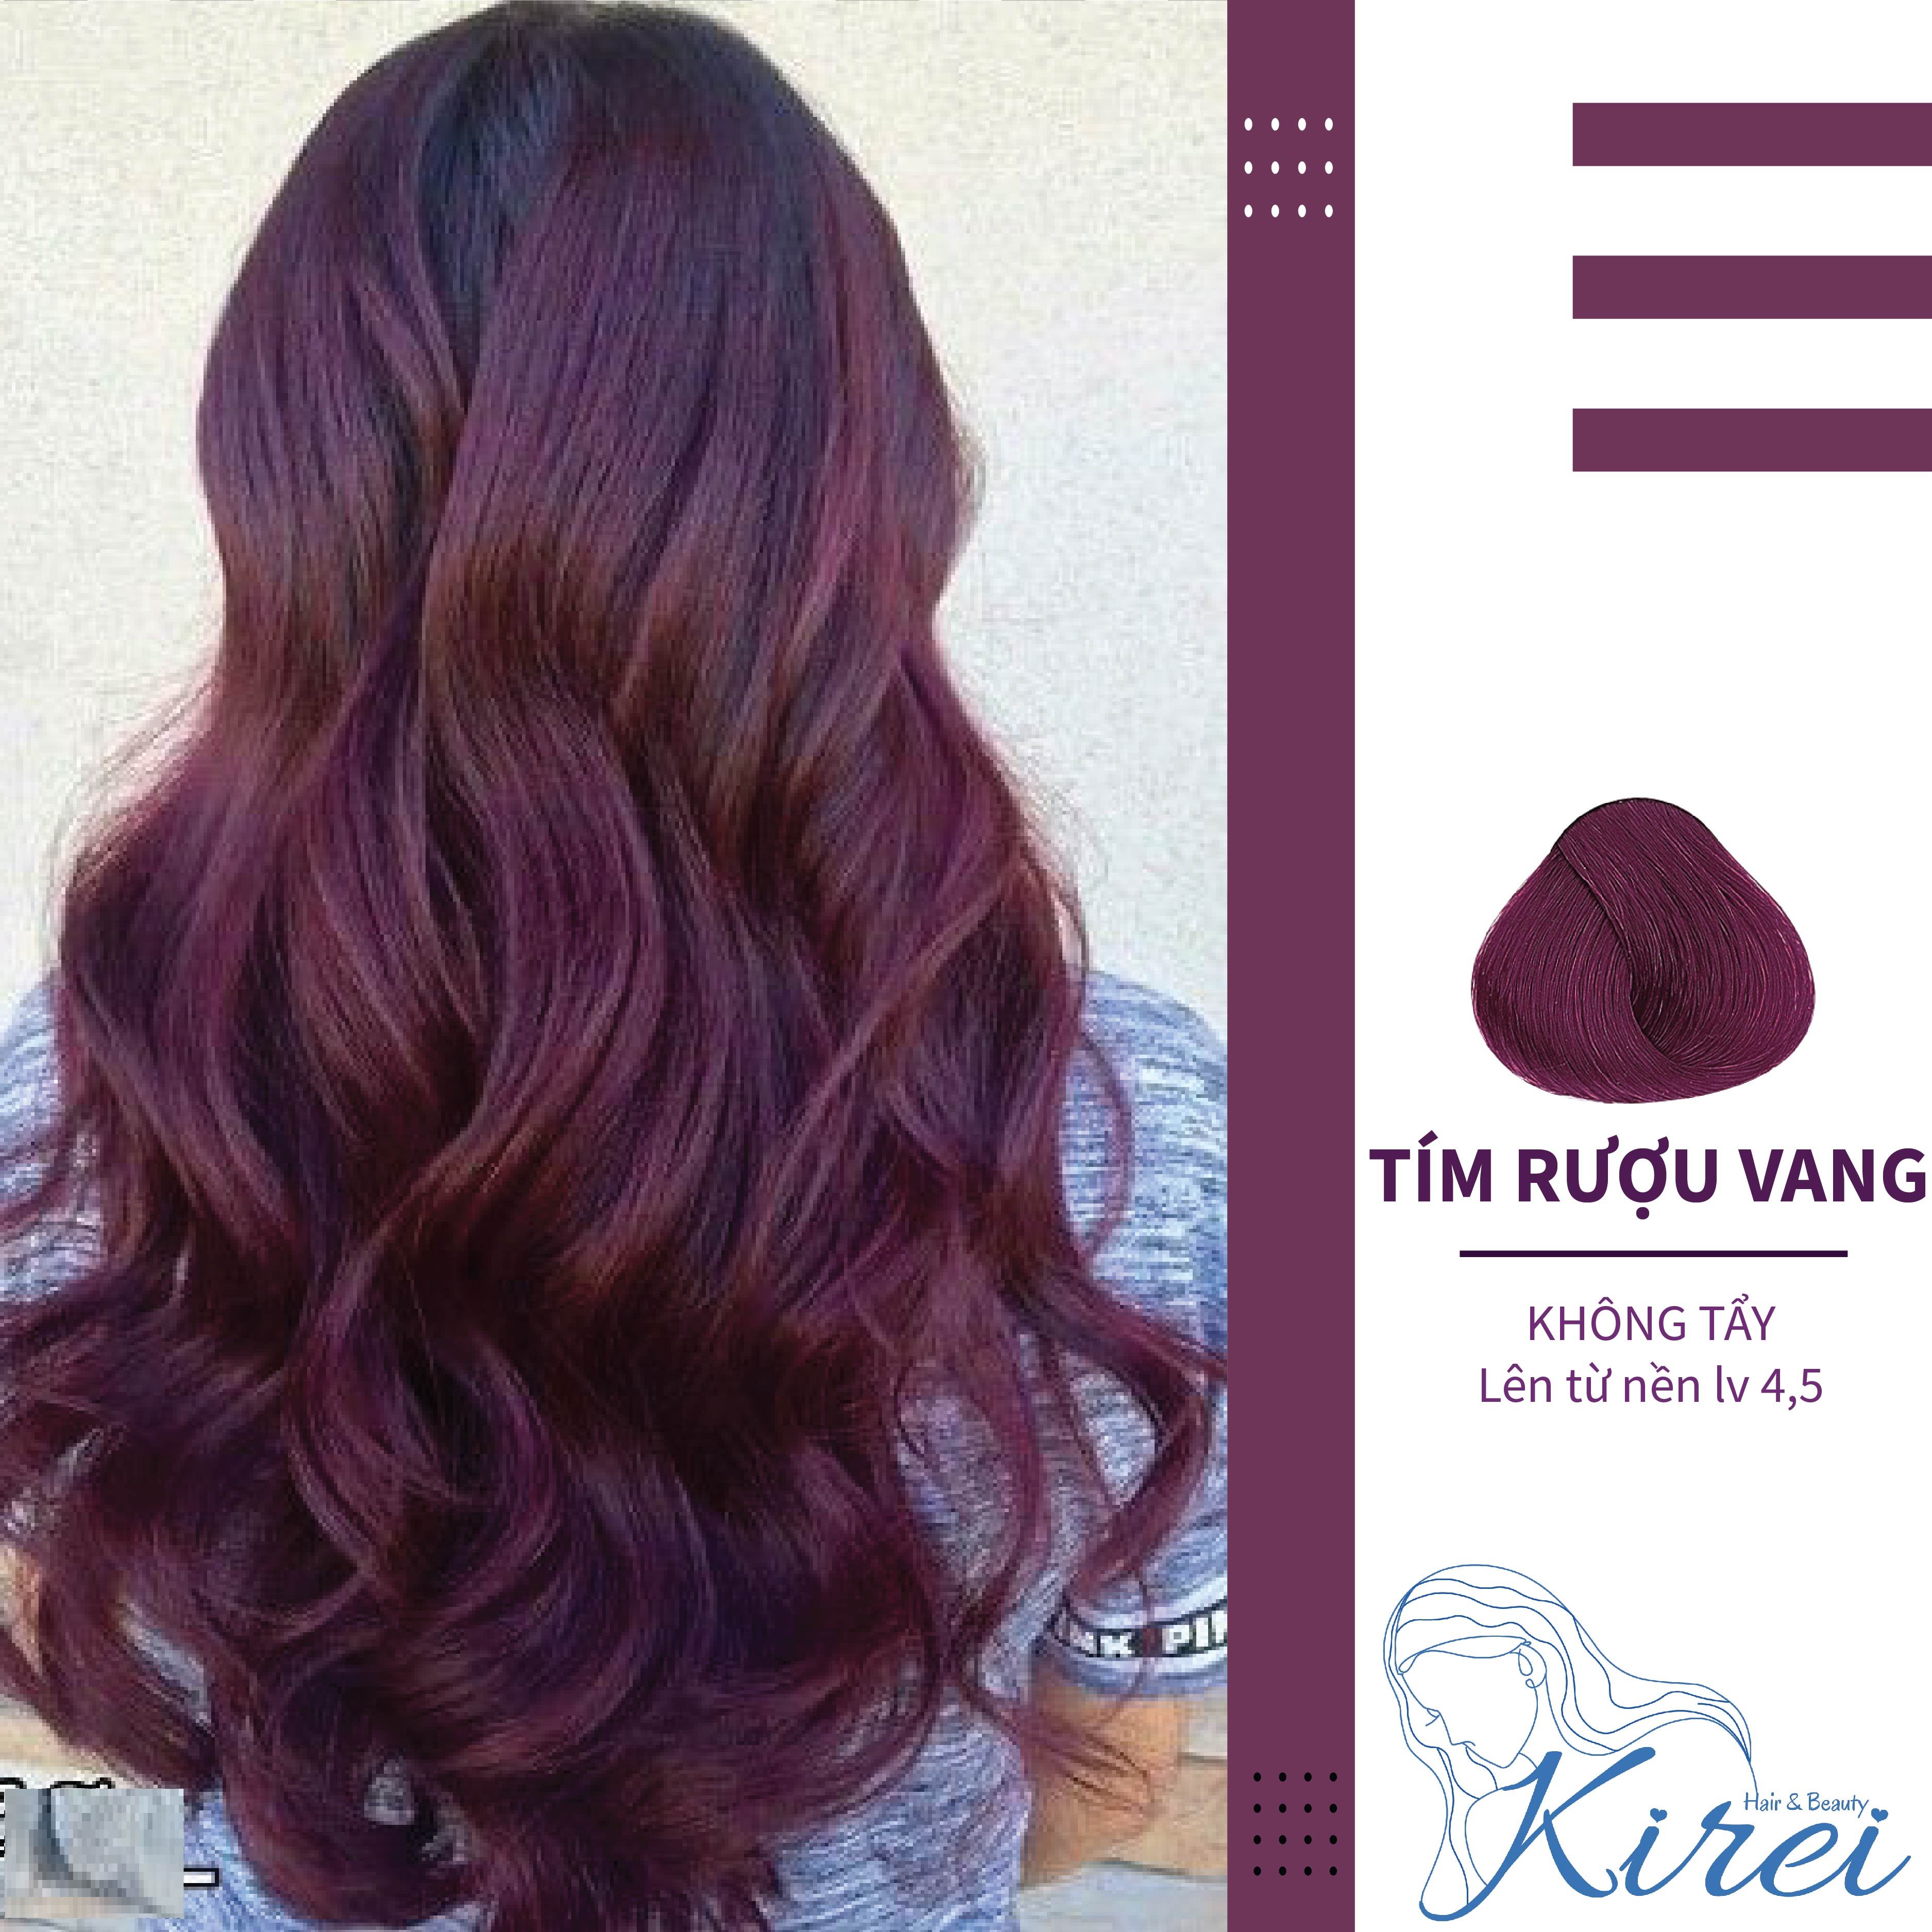 KireiHair tím rượu vang: Với KireiHair tím rượu vang, bạn sẽ có một màu tóc đẹp huyền bí và quyến rũ. Tận hưởng cuộc sống với một nhan sắc mới và tự tin hơn với màu tóc tuyệt đẹp này.